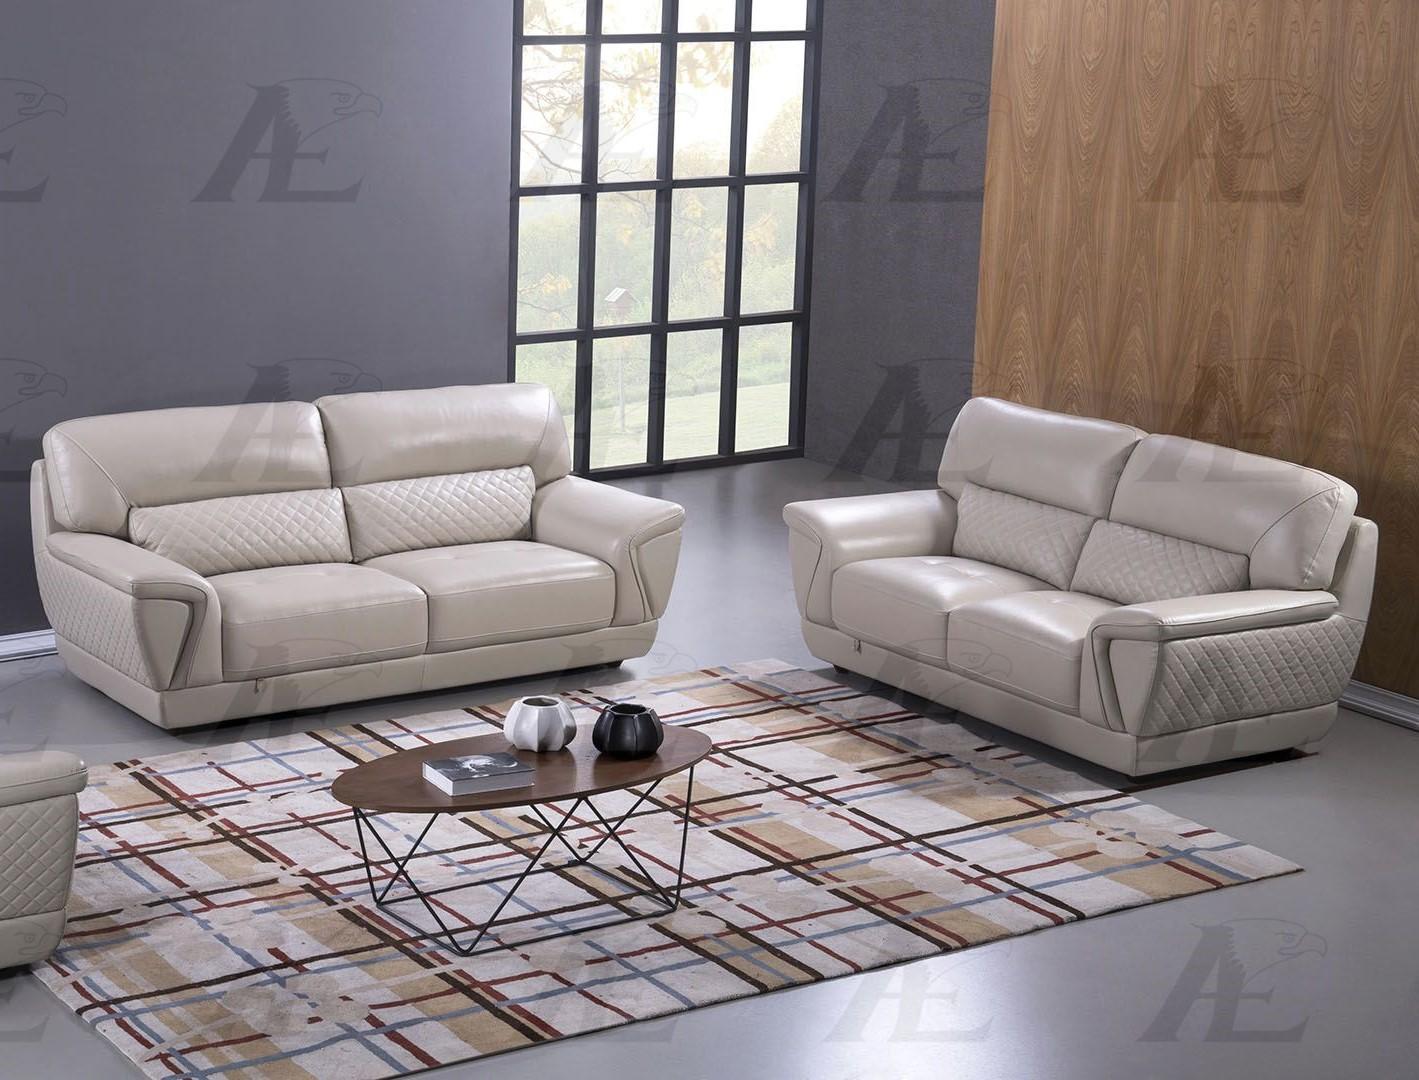 

    
EK099-LG-SF American Eagle Furniture Sofa
